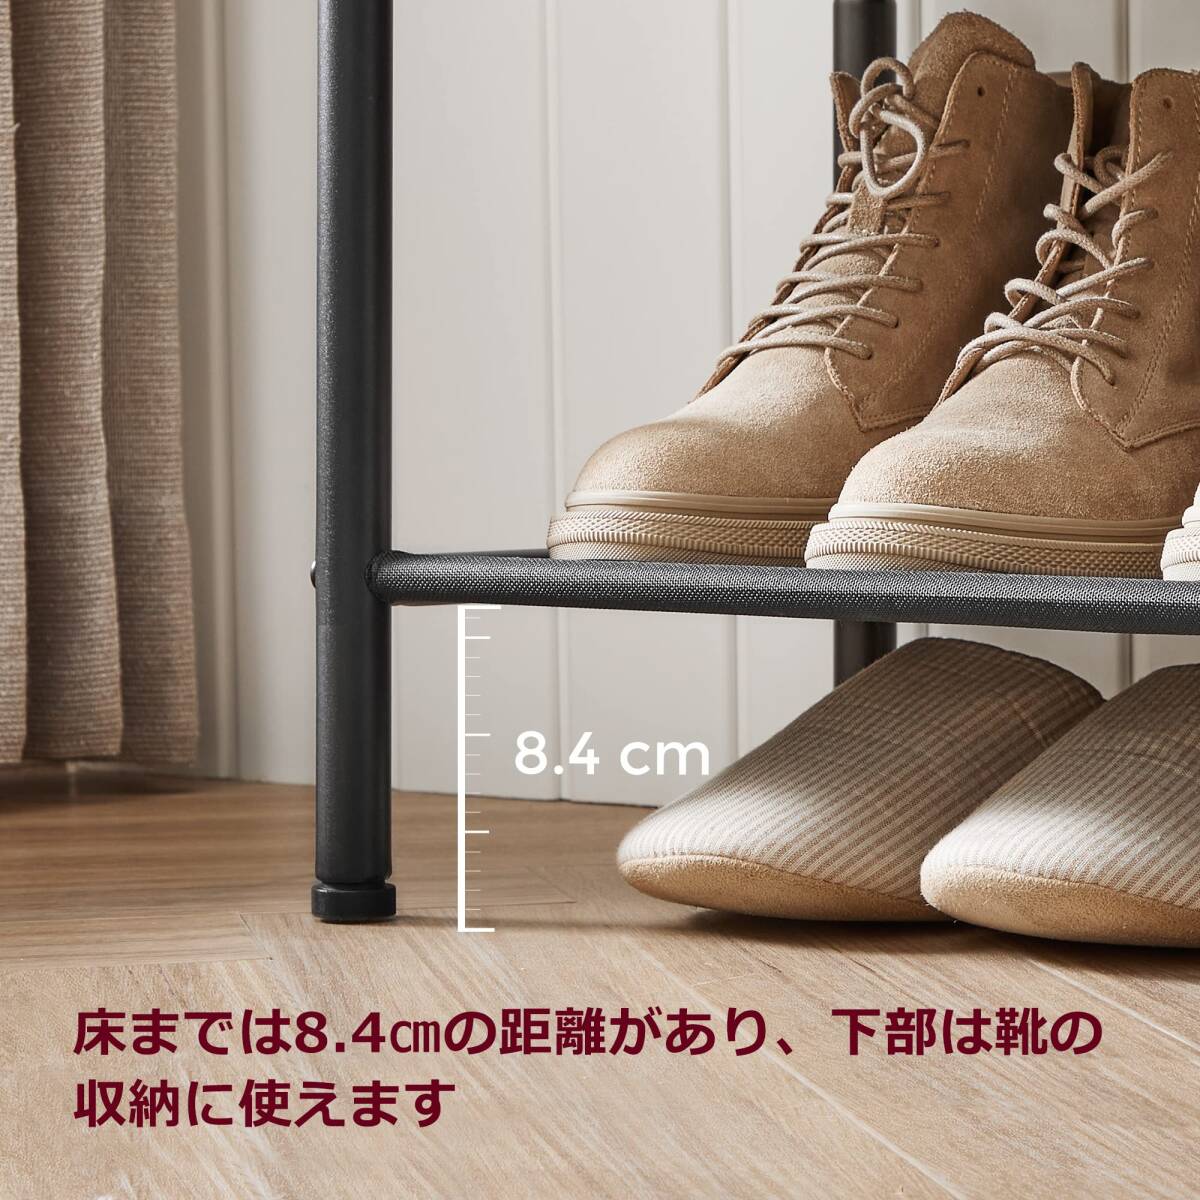 ☆シューズラック 下駄箱 靴 高品質 安全設計 操作簡単 3選択可能